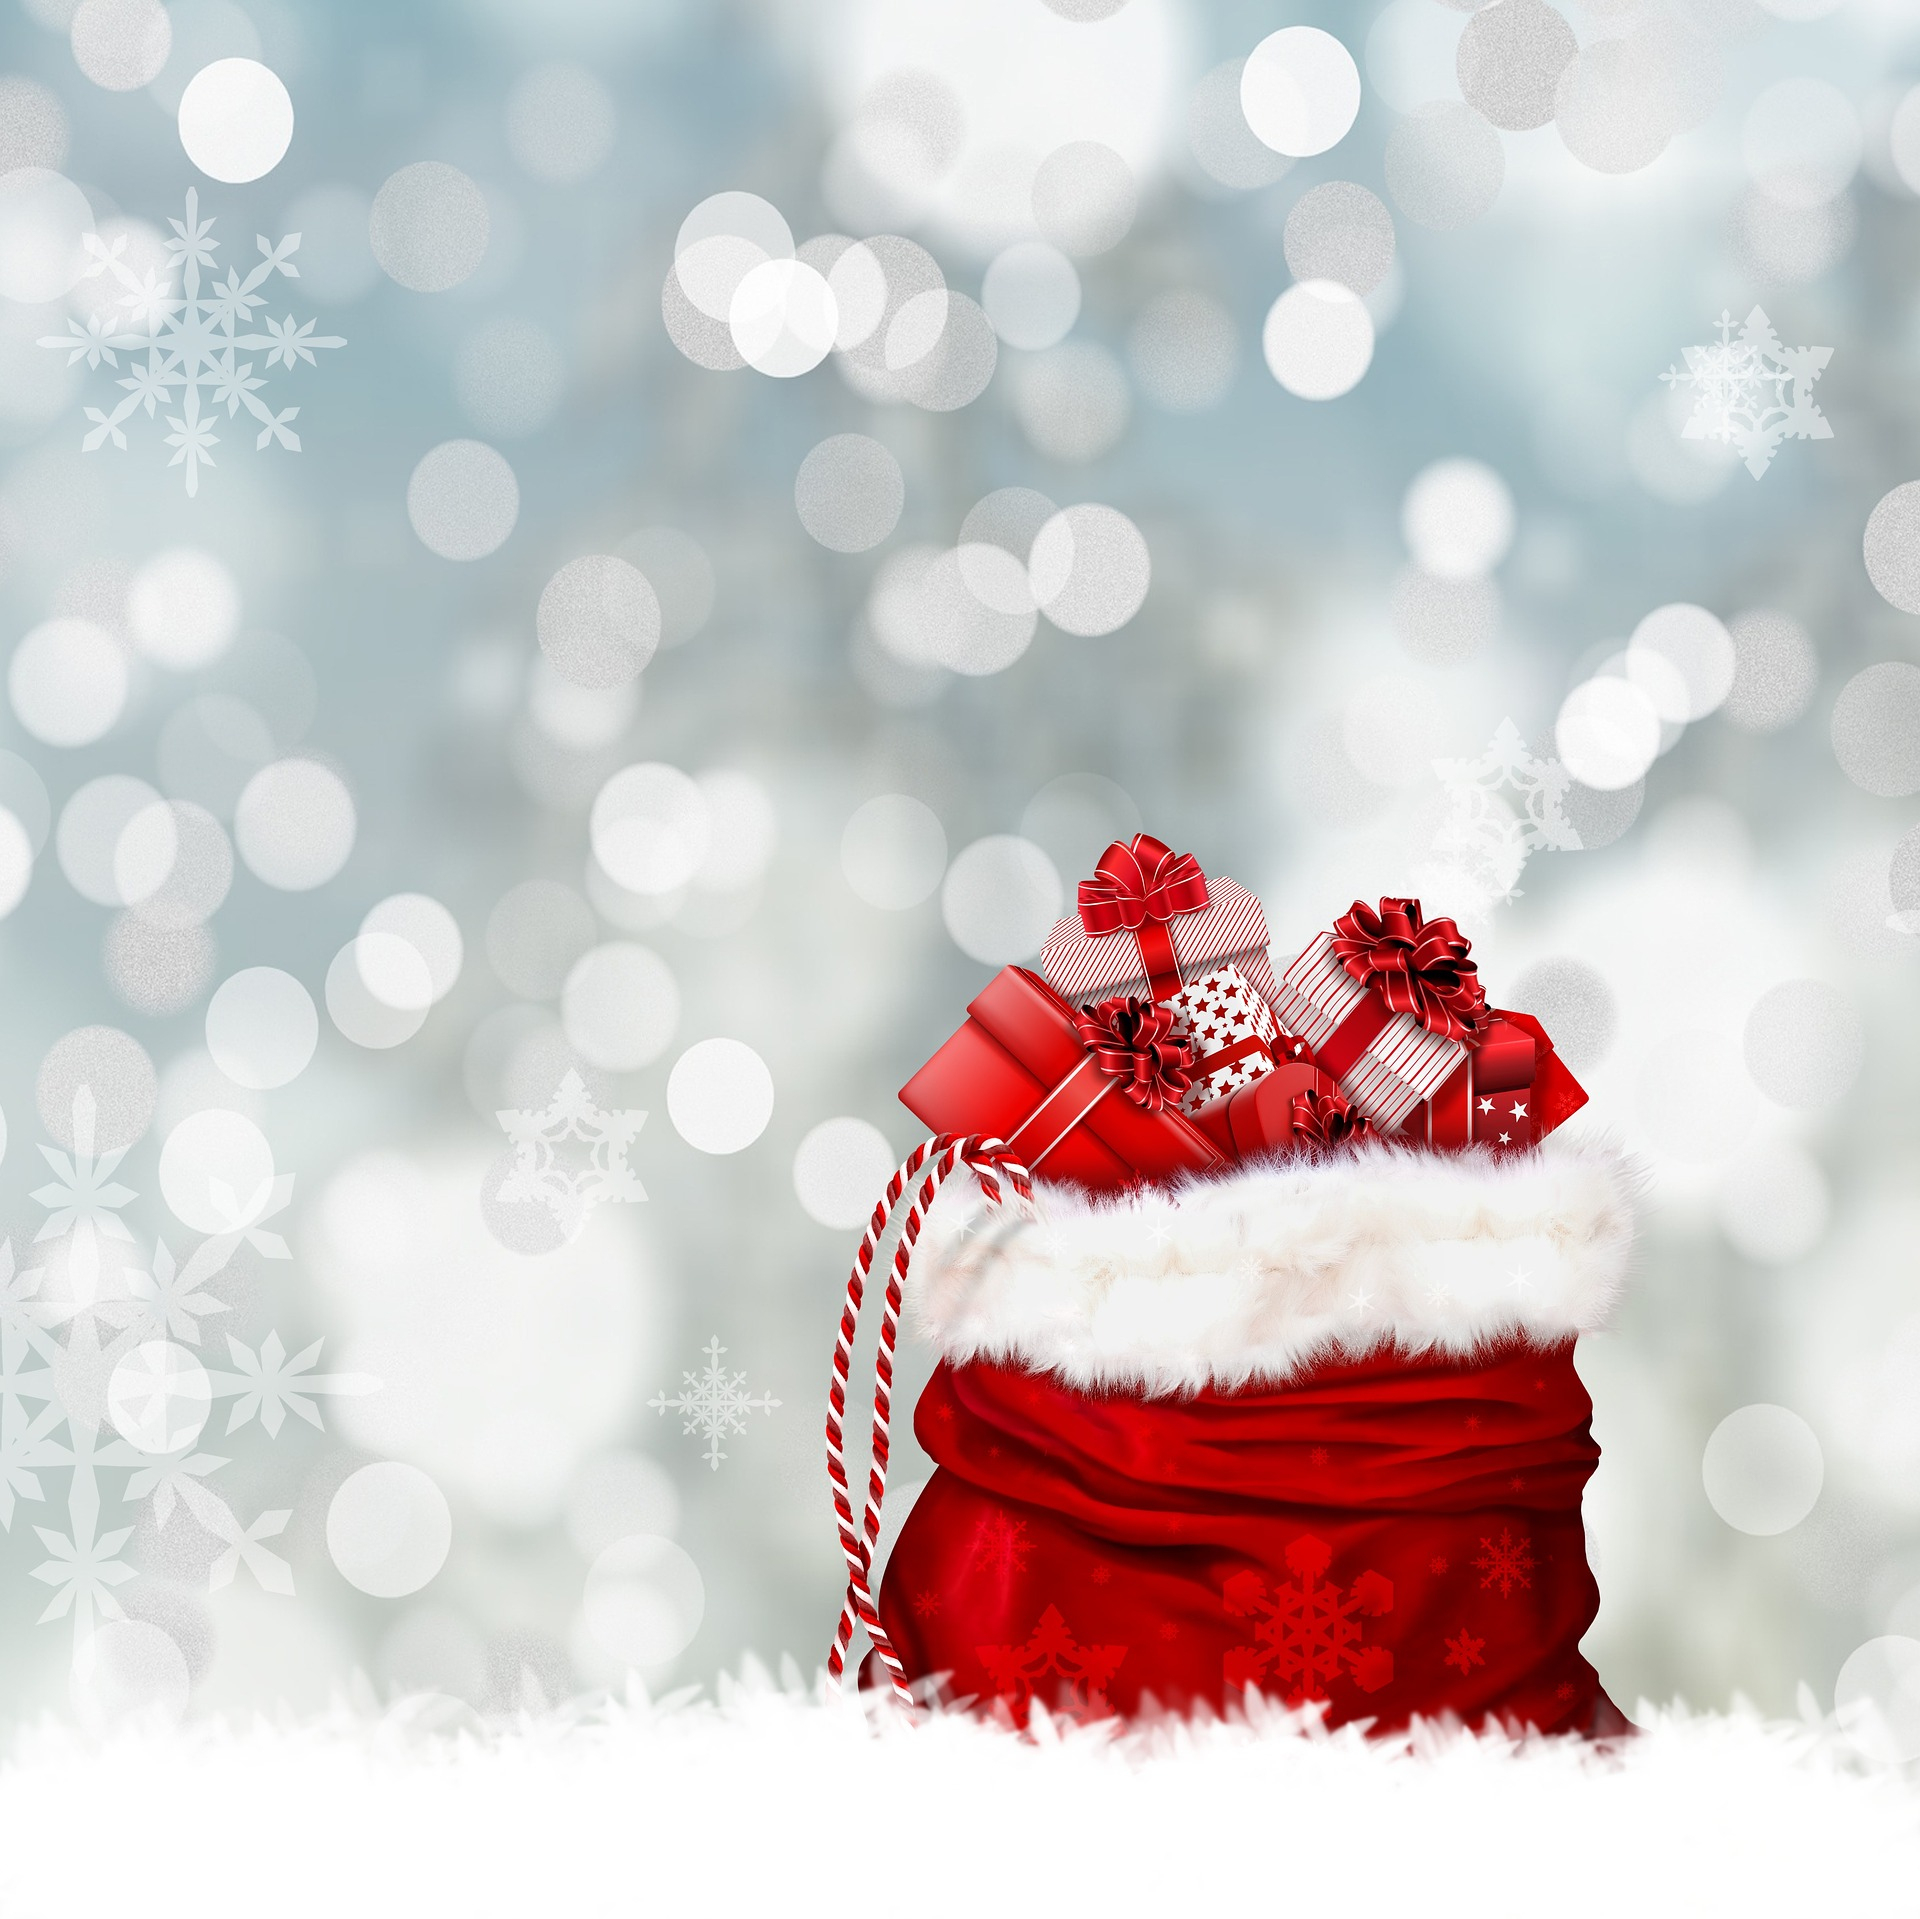 Weihnachtshintergrundbilder Zum Herunterladen für Weihnachten Hintergrund Gratis